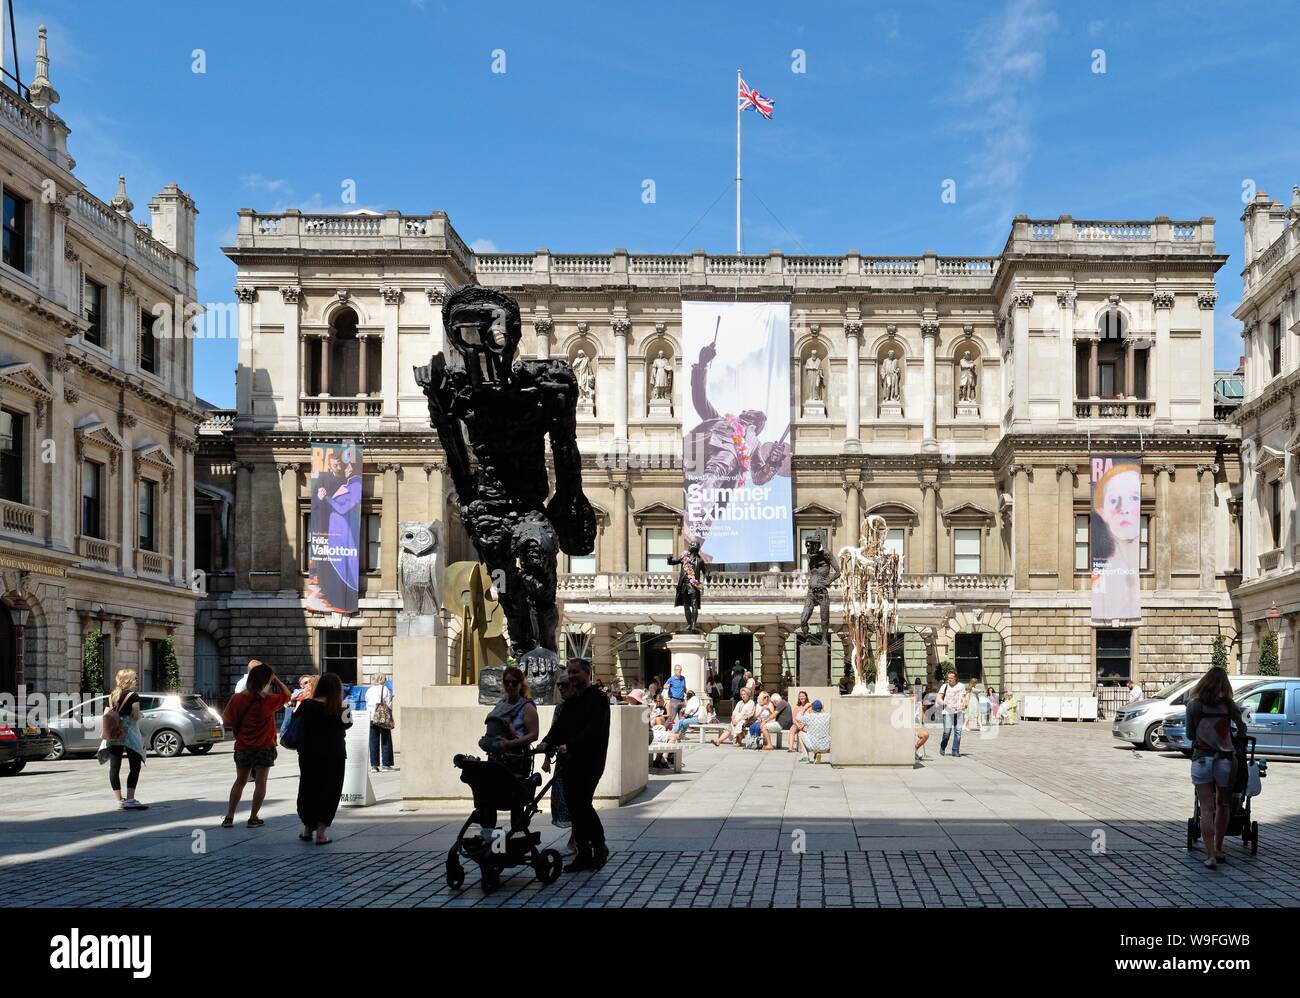 El exterior de la Real Academia de Bellas Artes de exposición durante el verano de 2019, Londres, Reino Unido Foto de stock